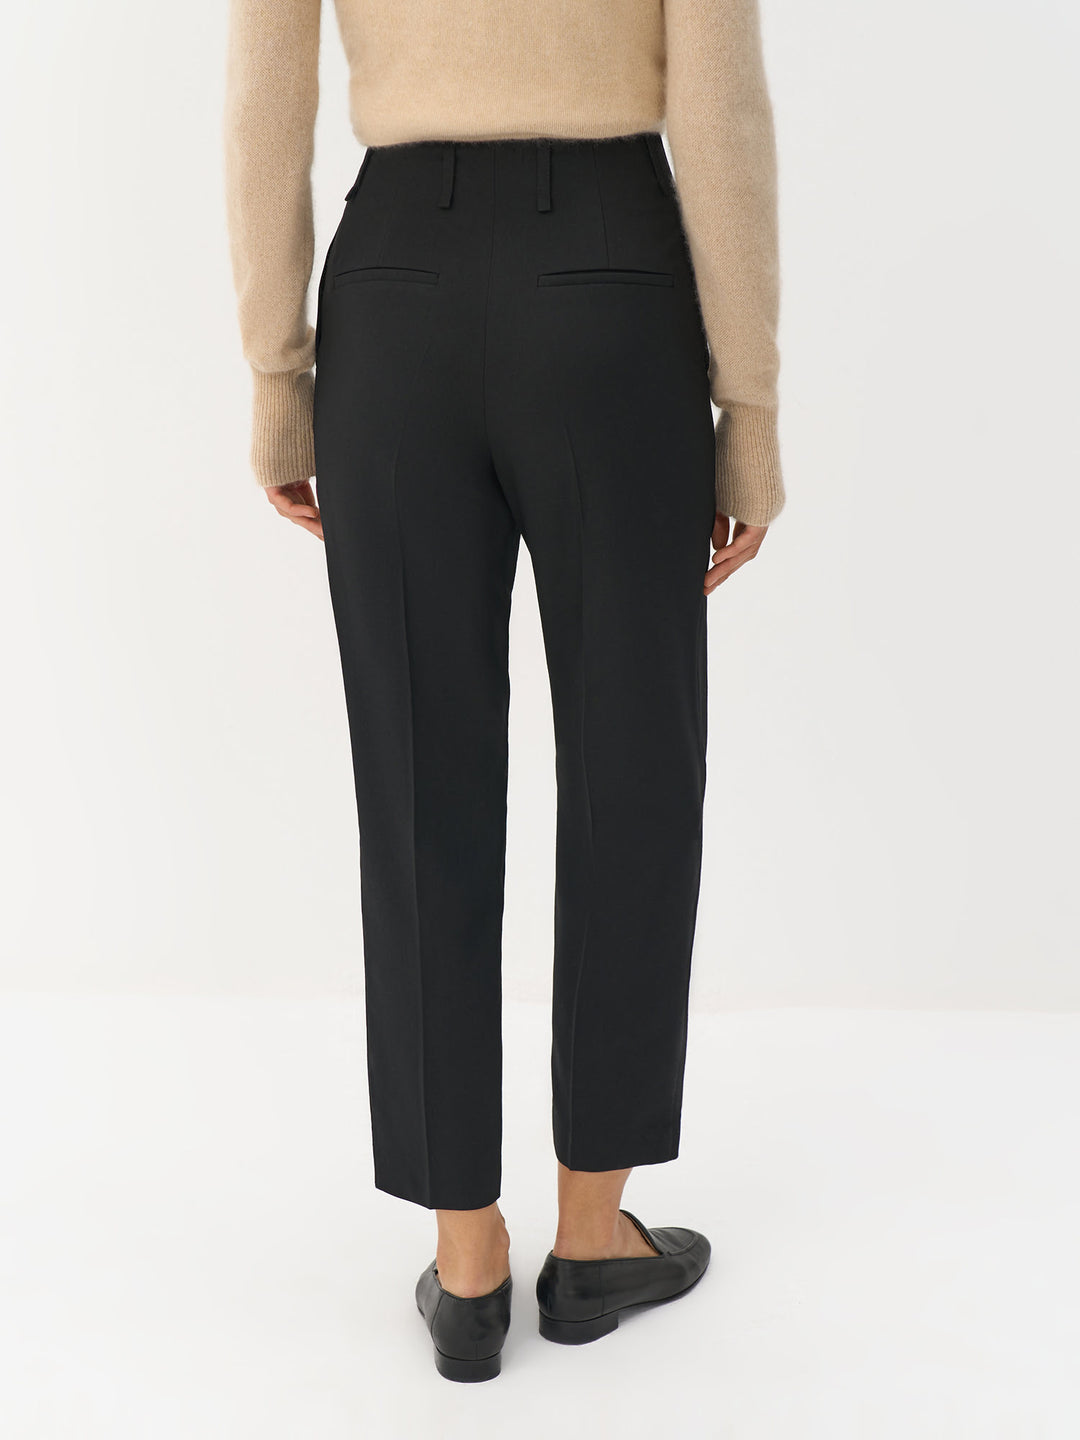 Ann cropped wool pants (black)